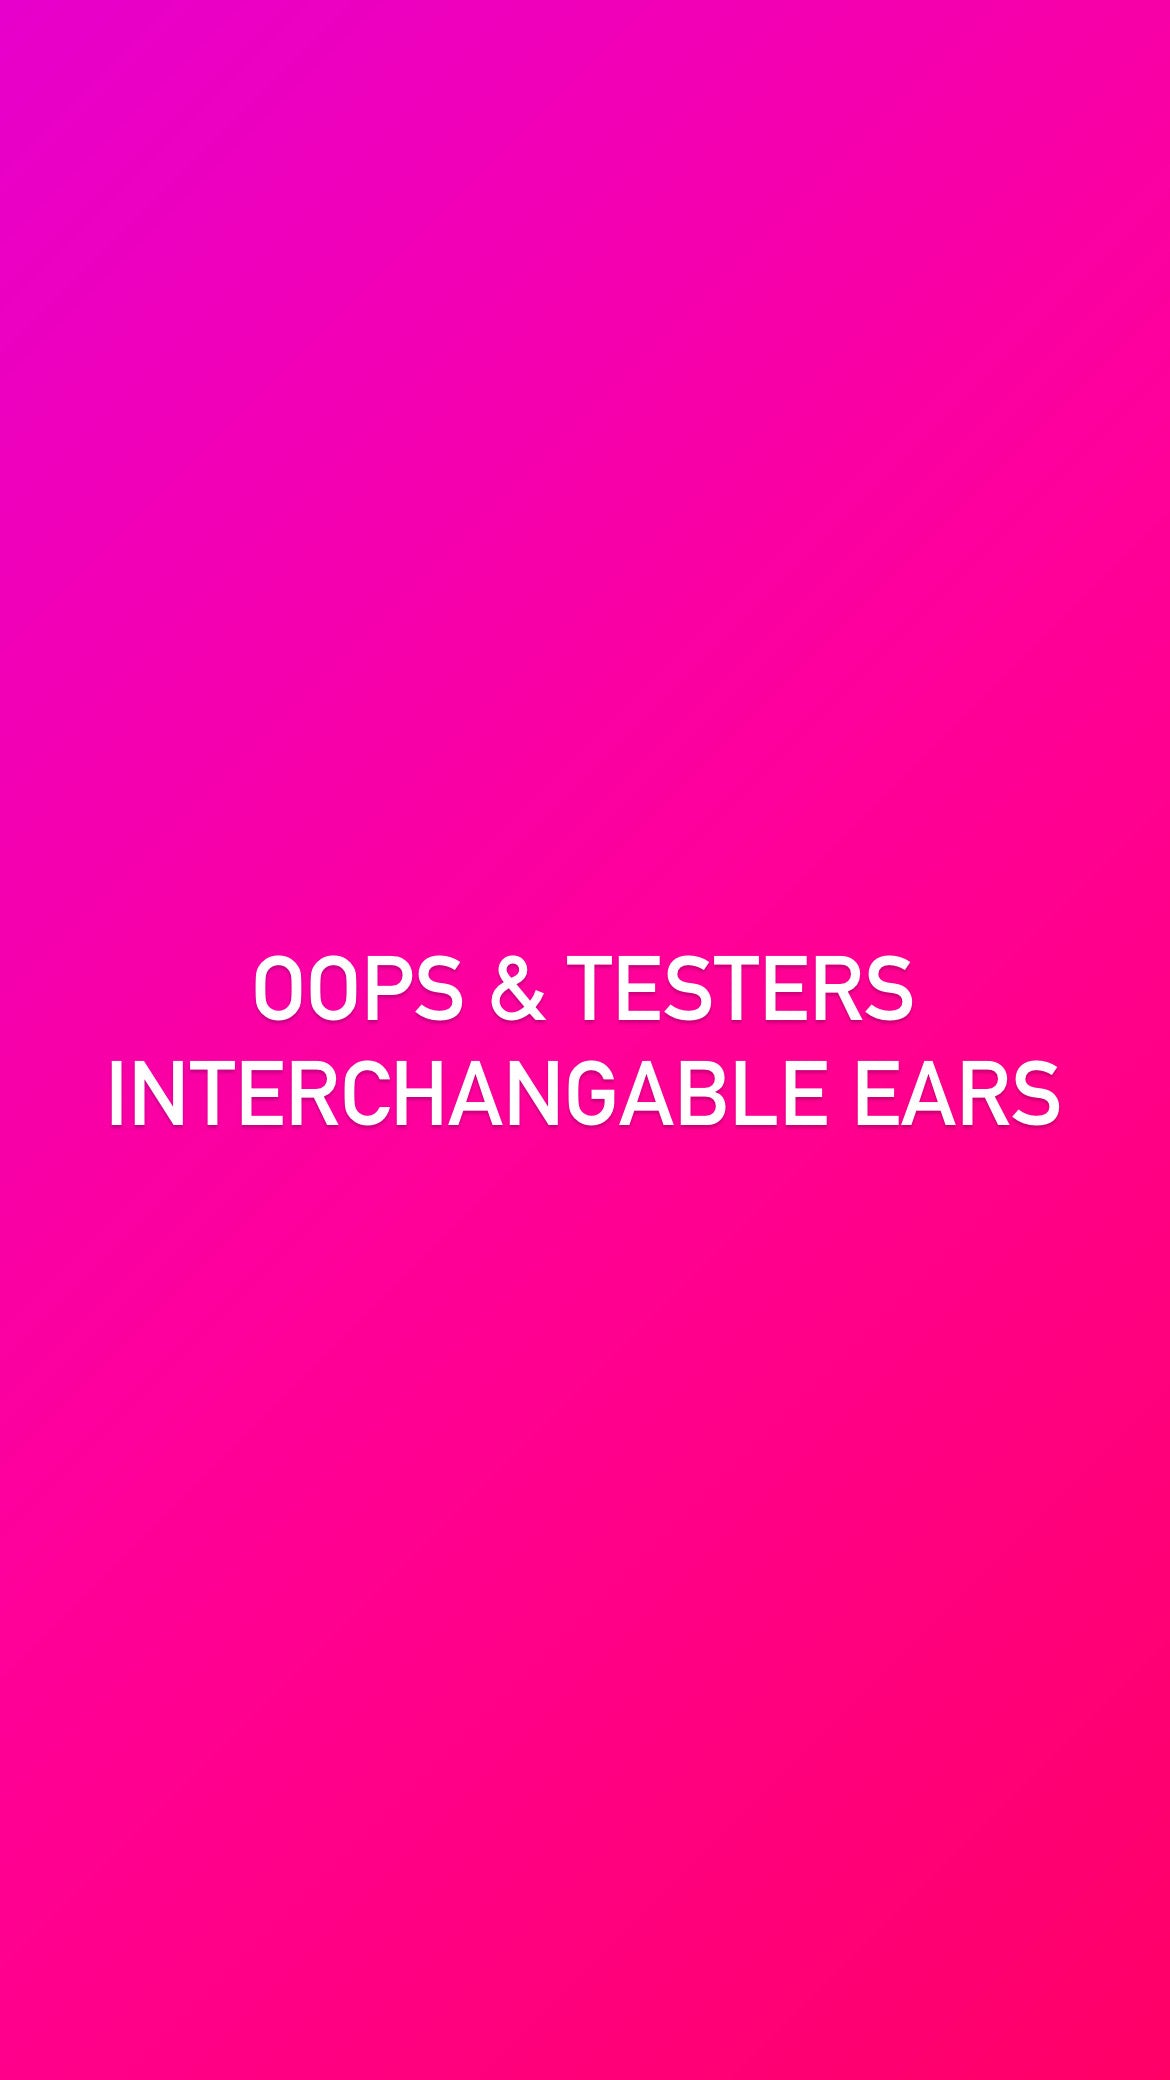 Oops & Testers interchangeable ears